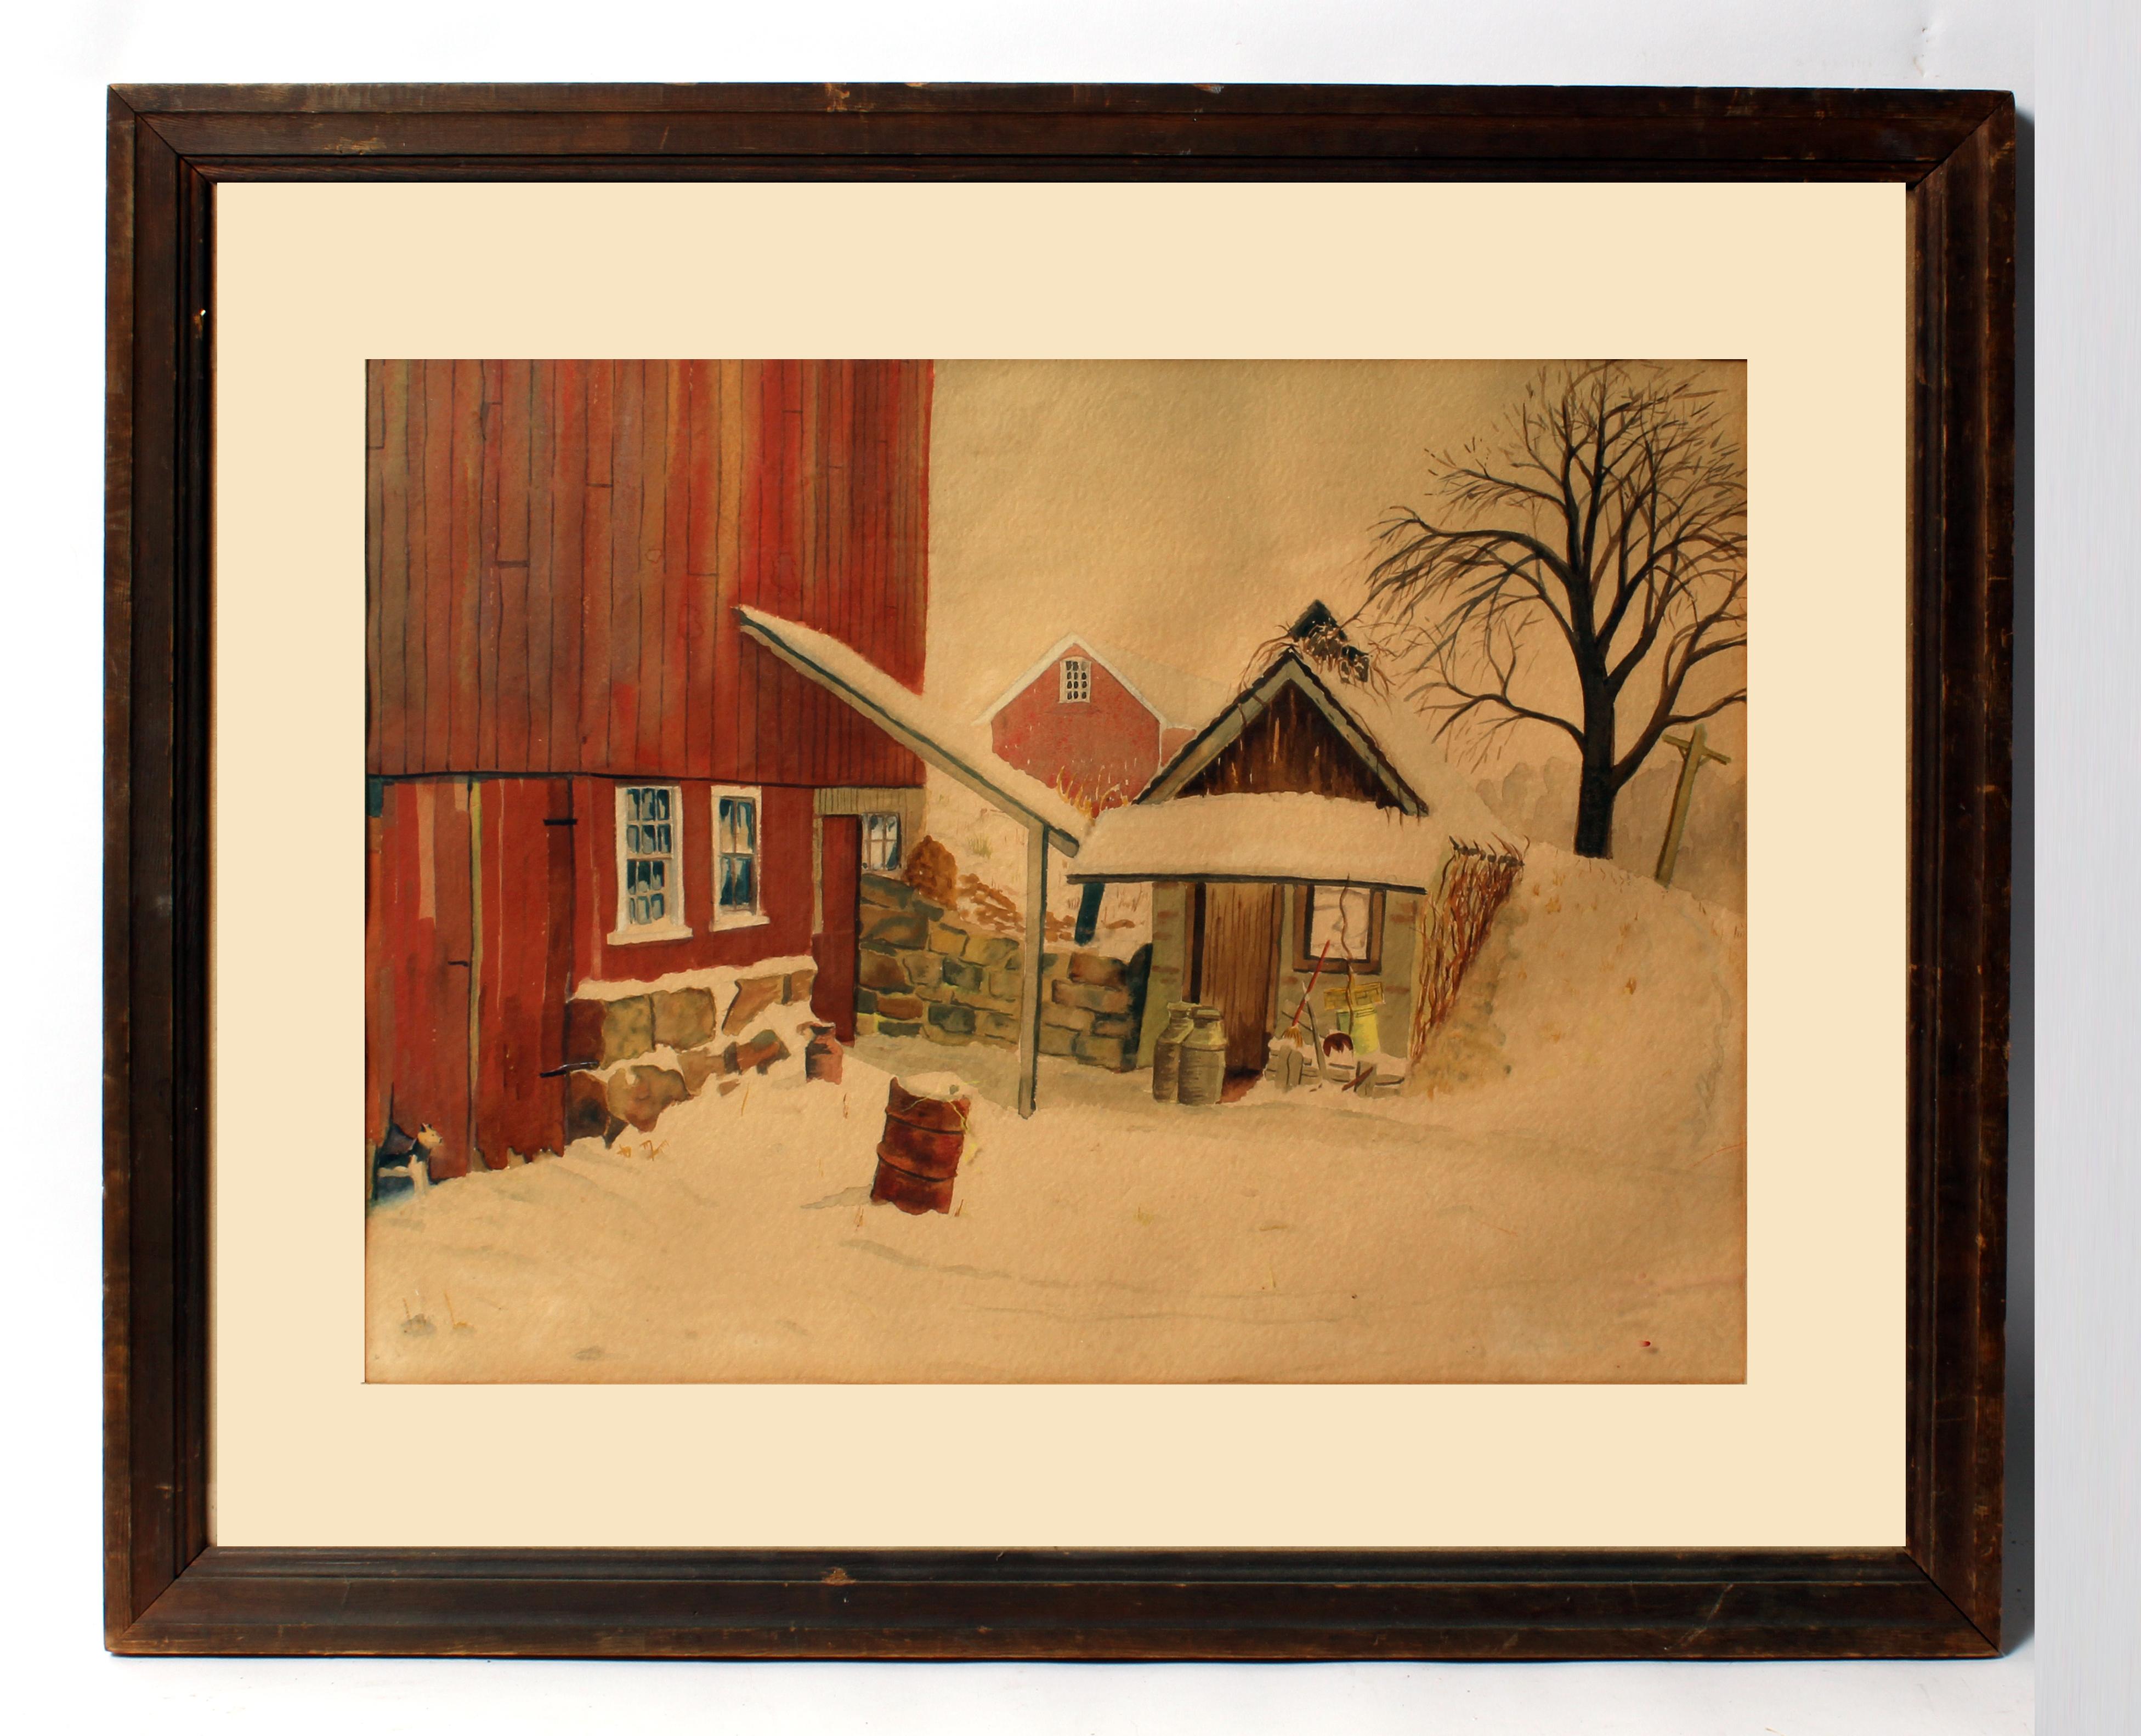 Landscape Art Joseph Koch - Butler Art Institute - Aquarelle d'une scène de grange avec chien d'hiver, c. 1940 